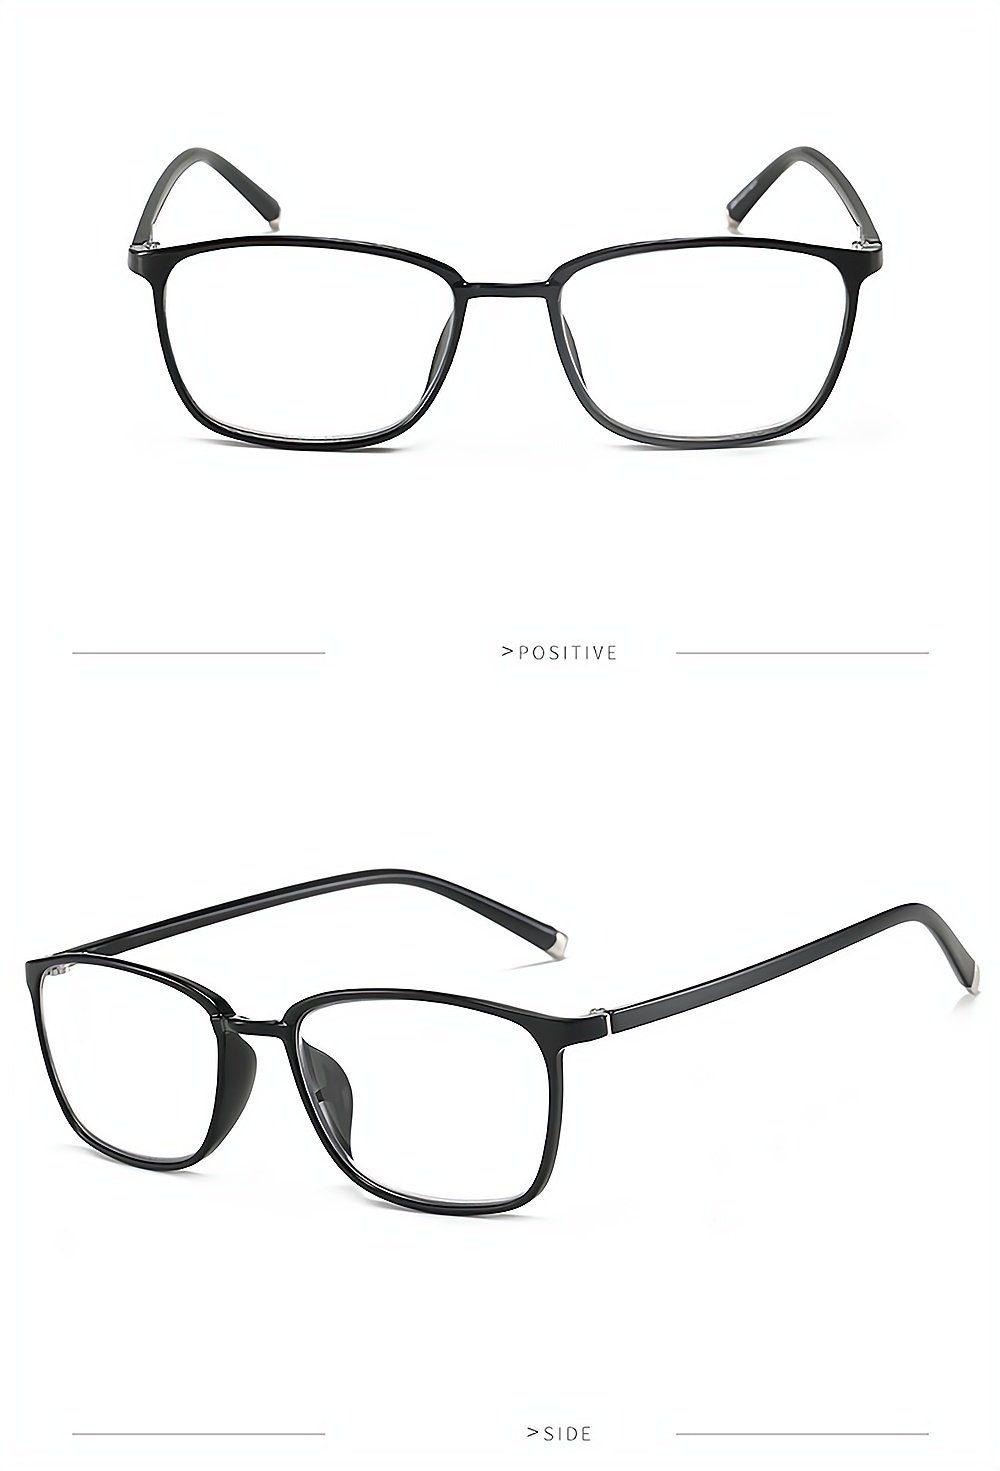 PACIEA Lesebrille Mode bedruckte Rahmen anti blaue presbyopische Gläser schwarz